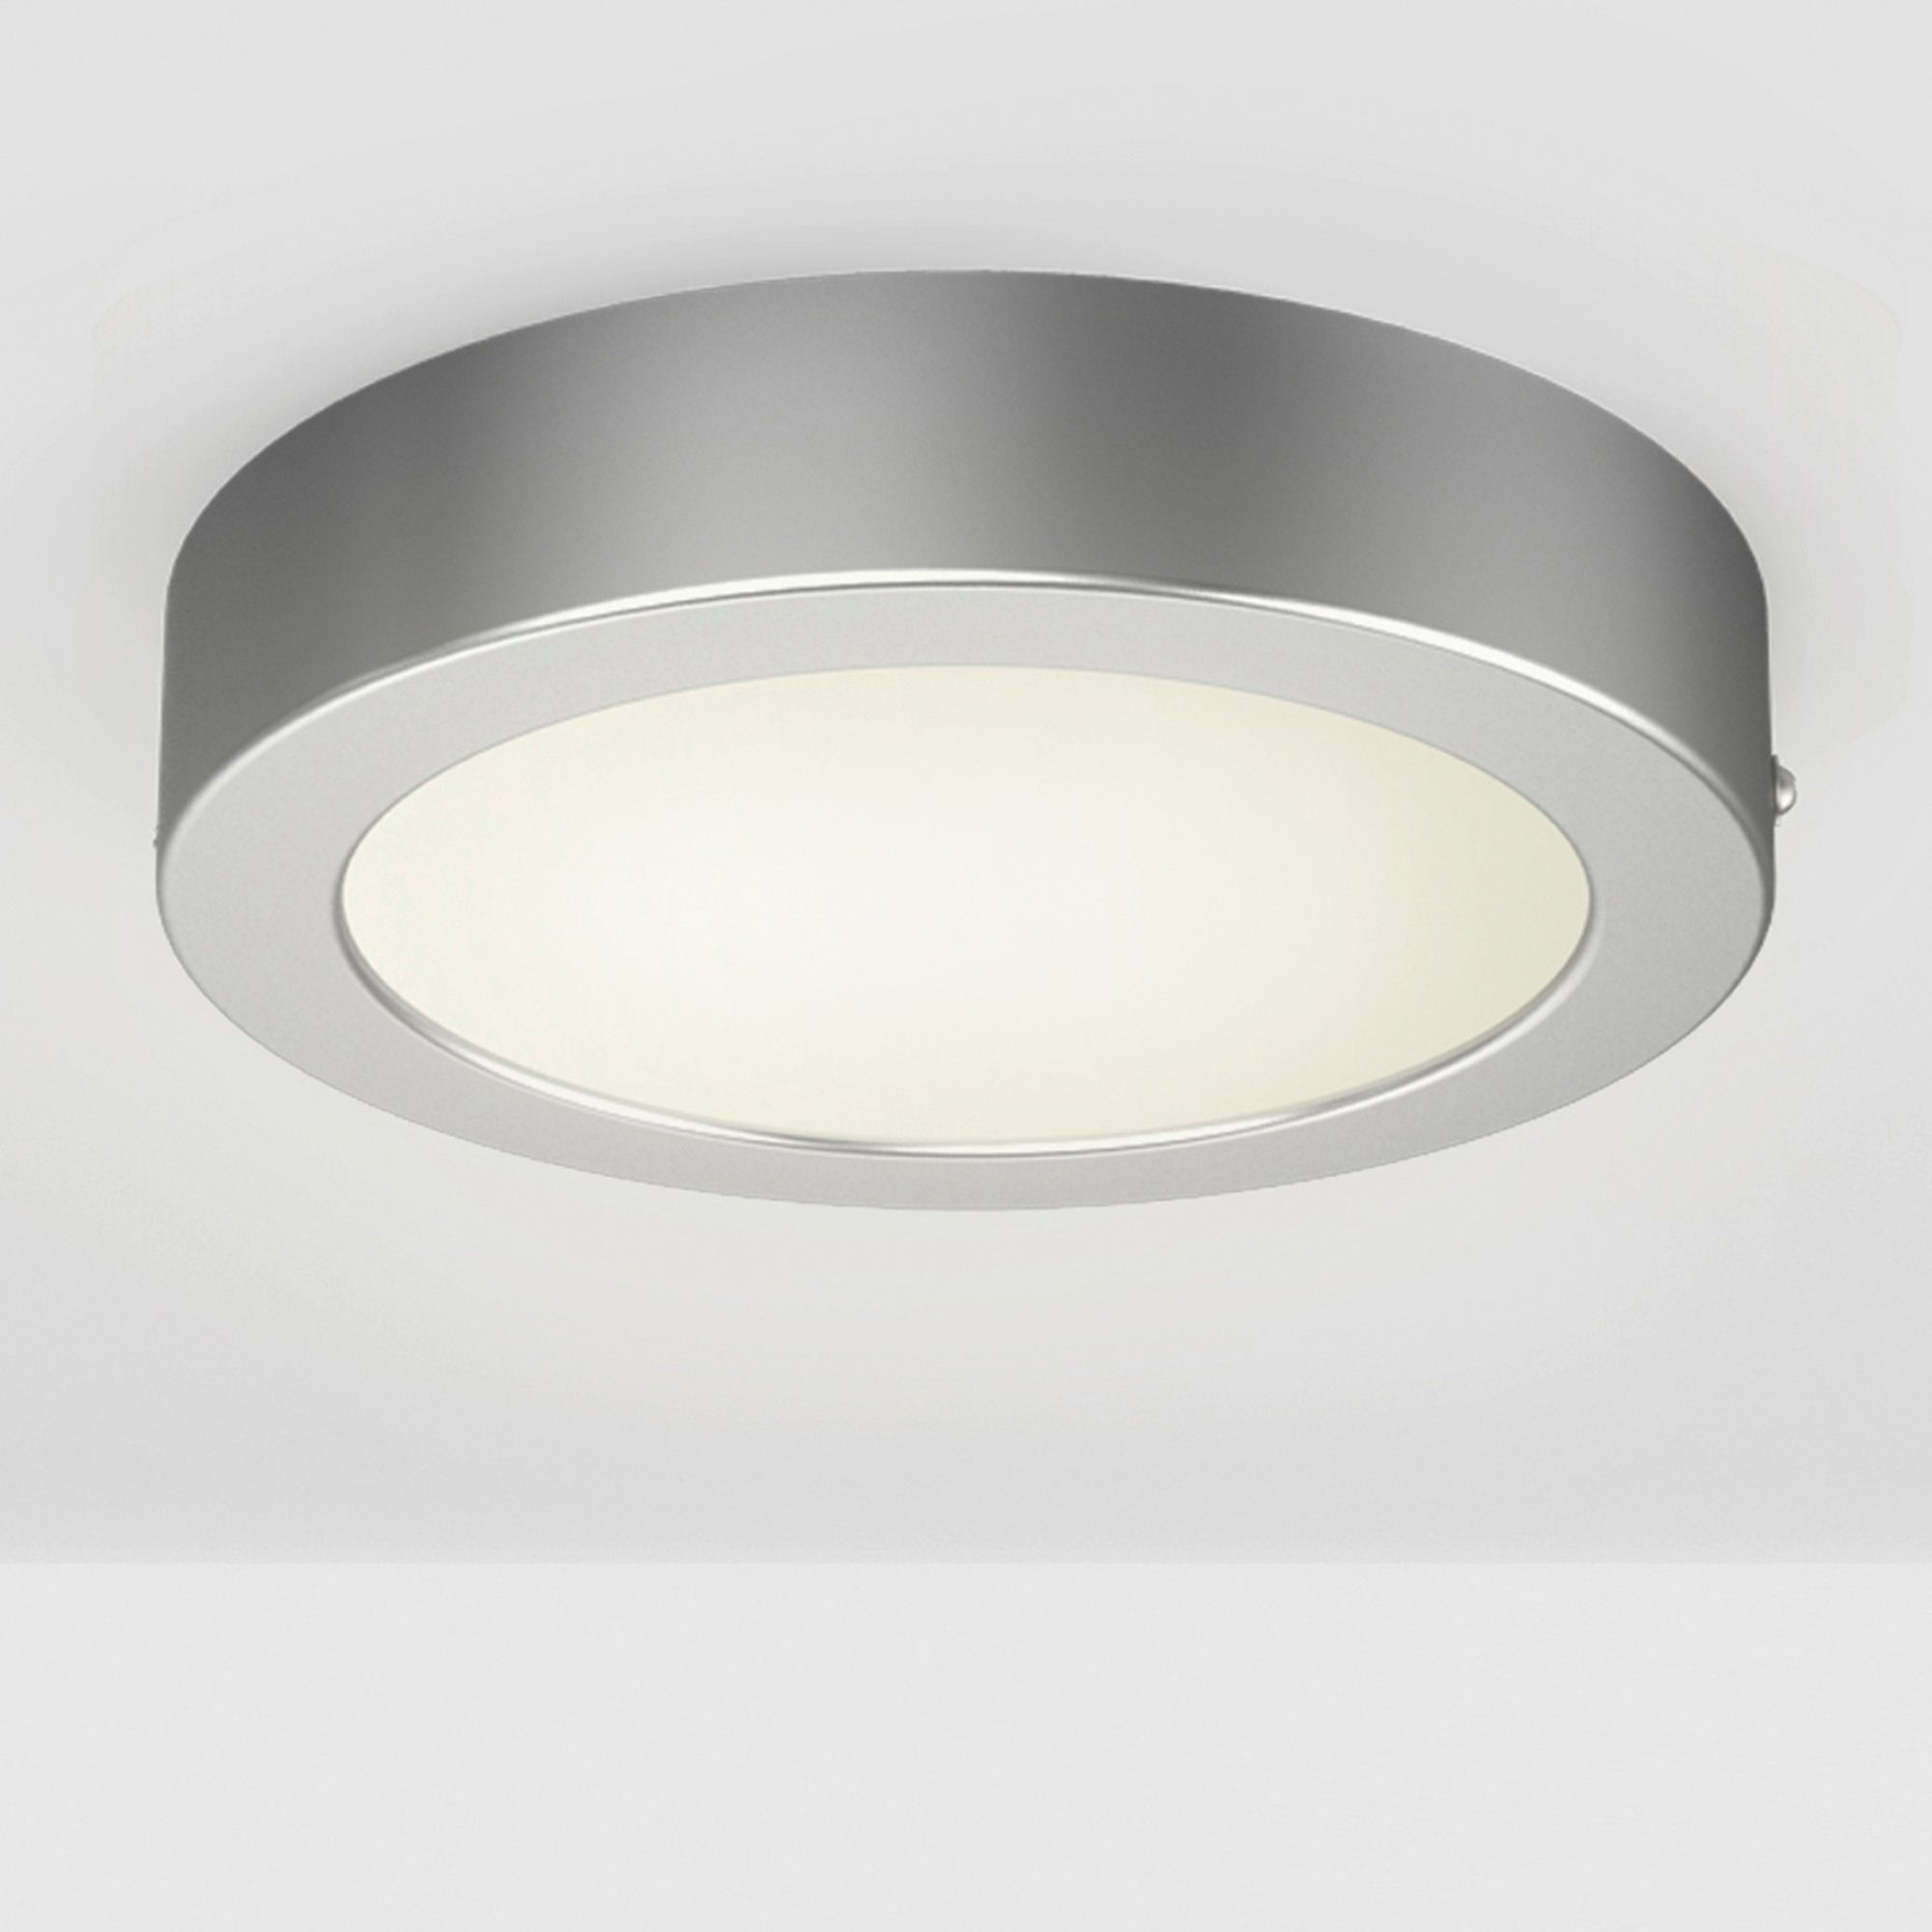 B.K.Licht LED Aufbaustrahler Garnet, silber integriert, 230V, LED Wand-Leuchte, fest Deckenleuchte, Aufputz-Deckenlampe, Warmweiß, Panel